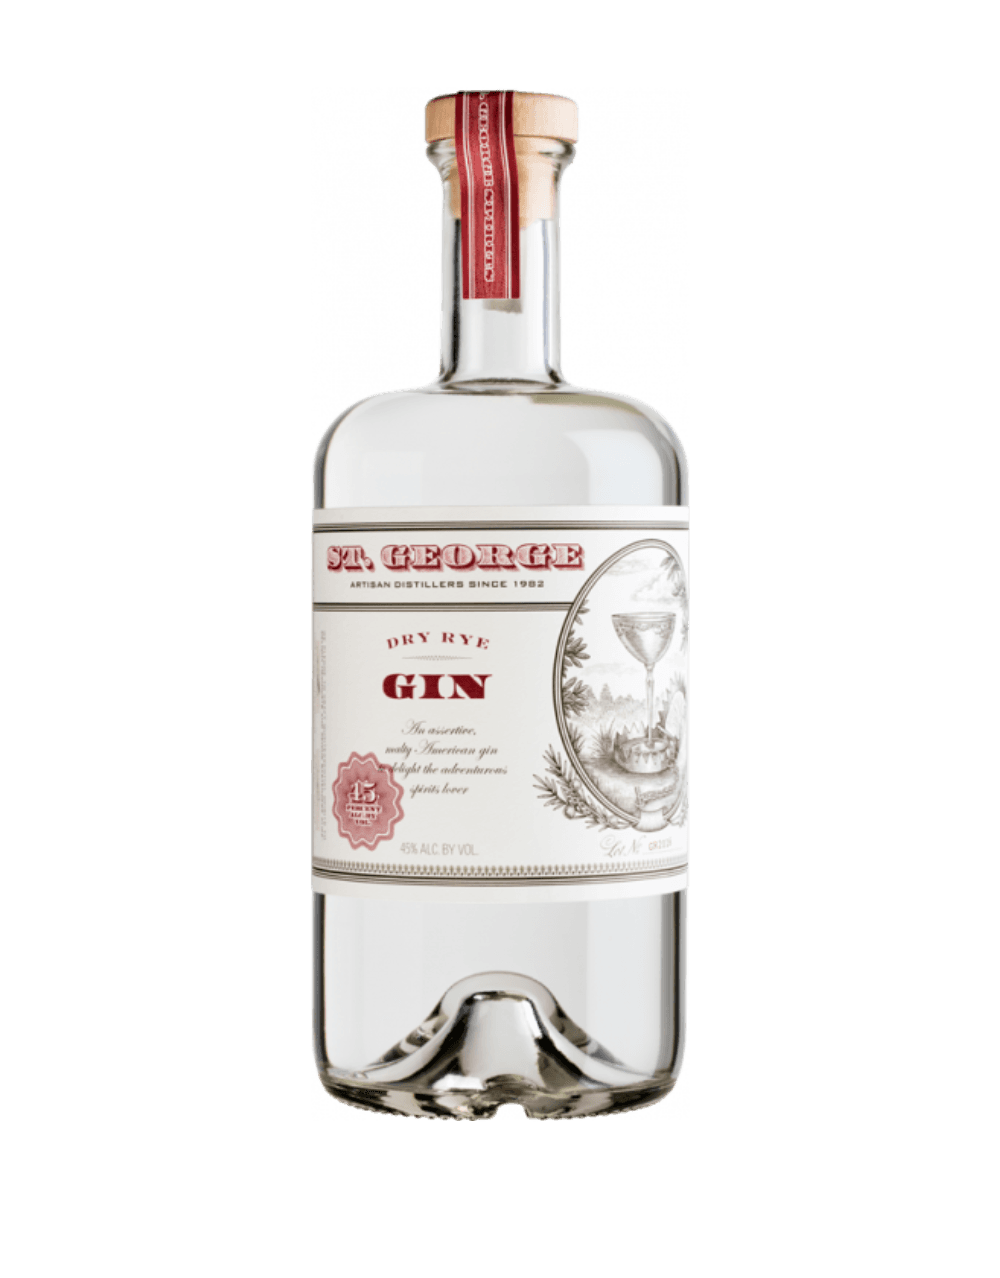 St. George Dry Rye Gin